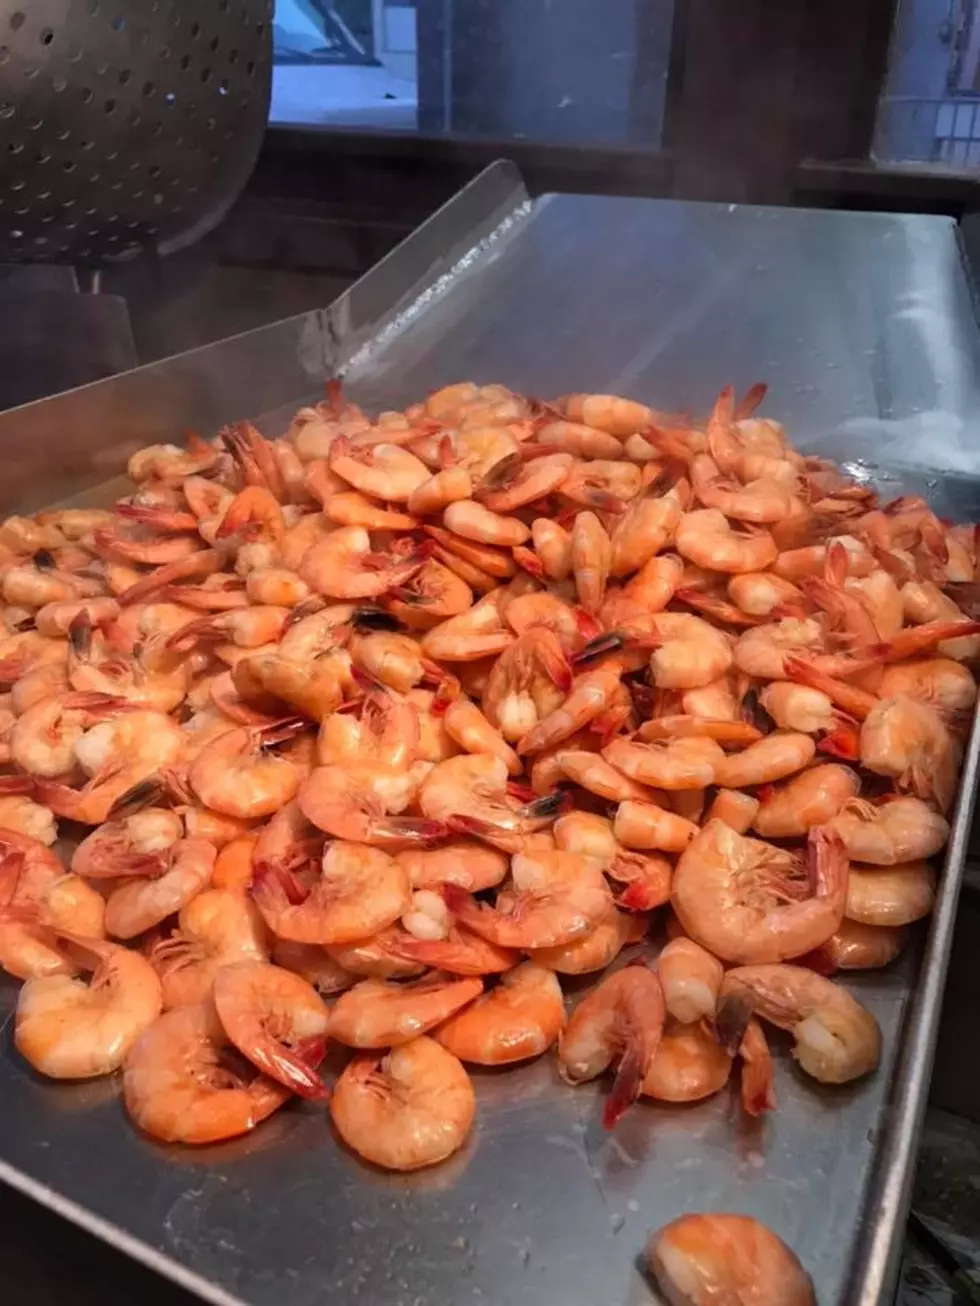 Delcambre Shrimp Festival 2020 Cancelled